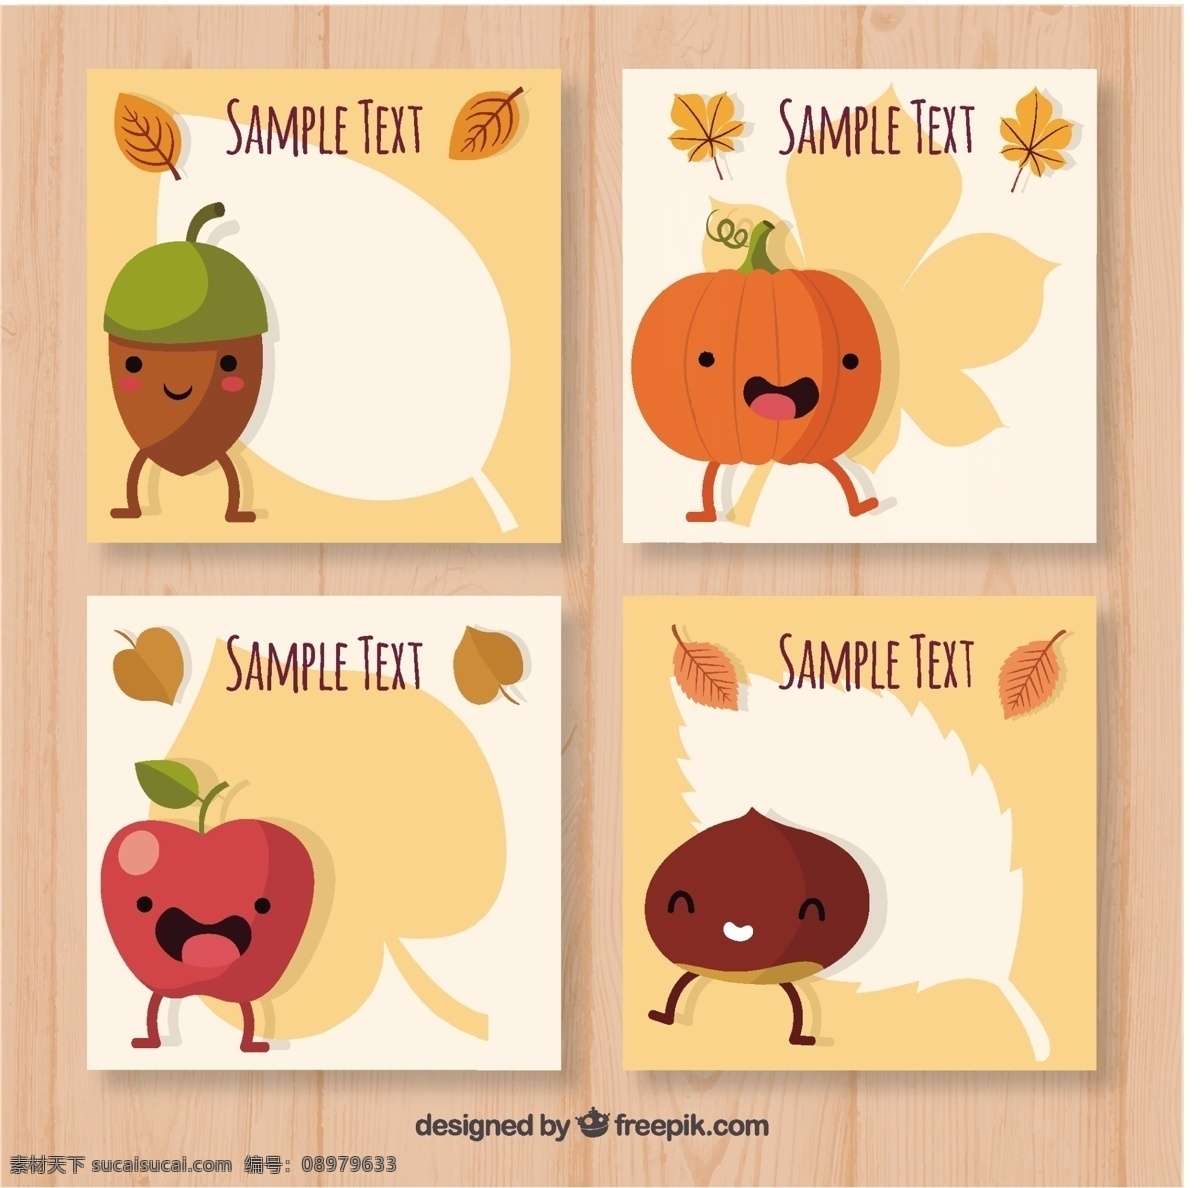 笑脸 元素 秋 卡 收集 乐趣 卡片 手 模板 树叶 自然 卡通 手绘 可爱 秋天 微笑 快乐 多彩 苹果 绘画 树木